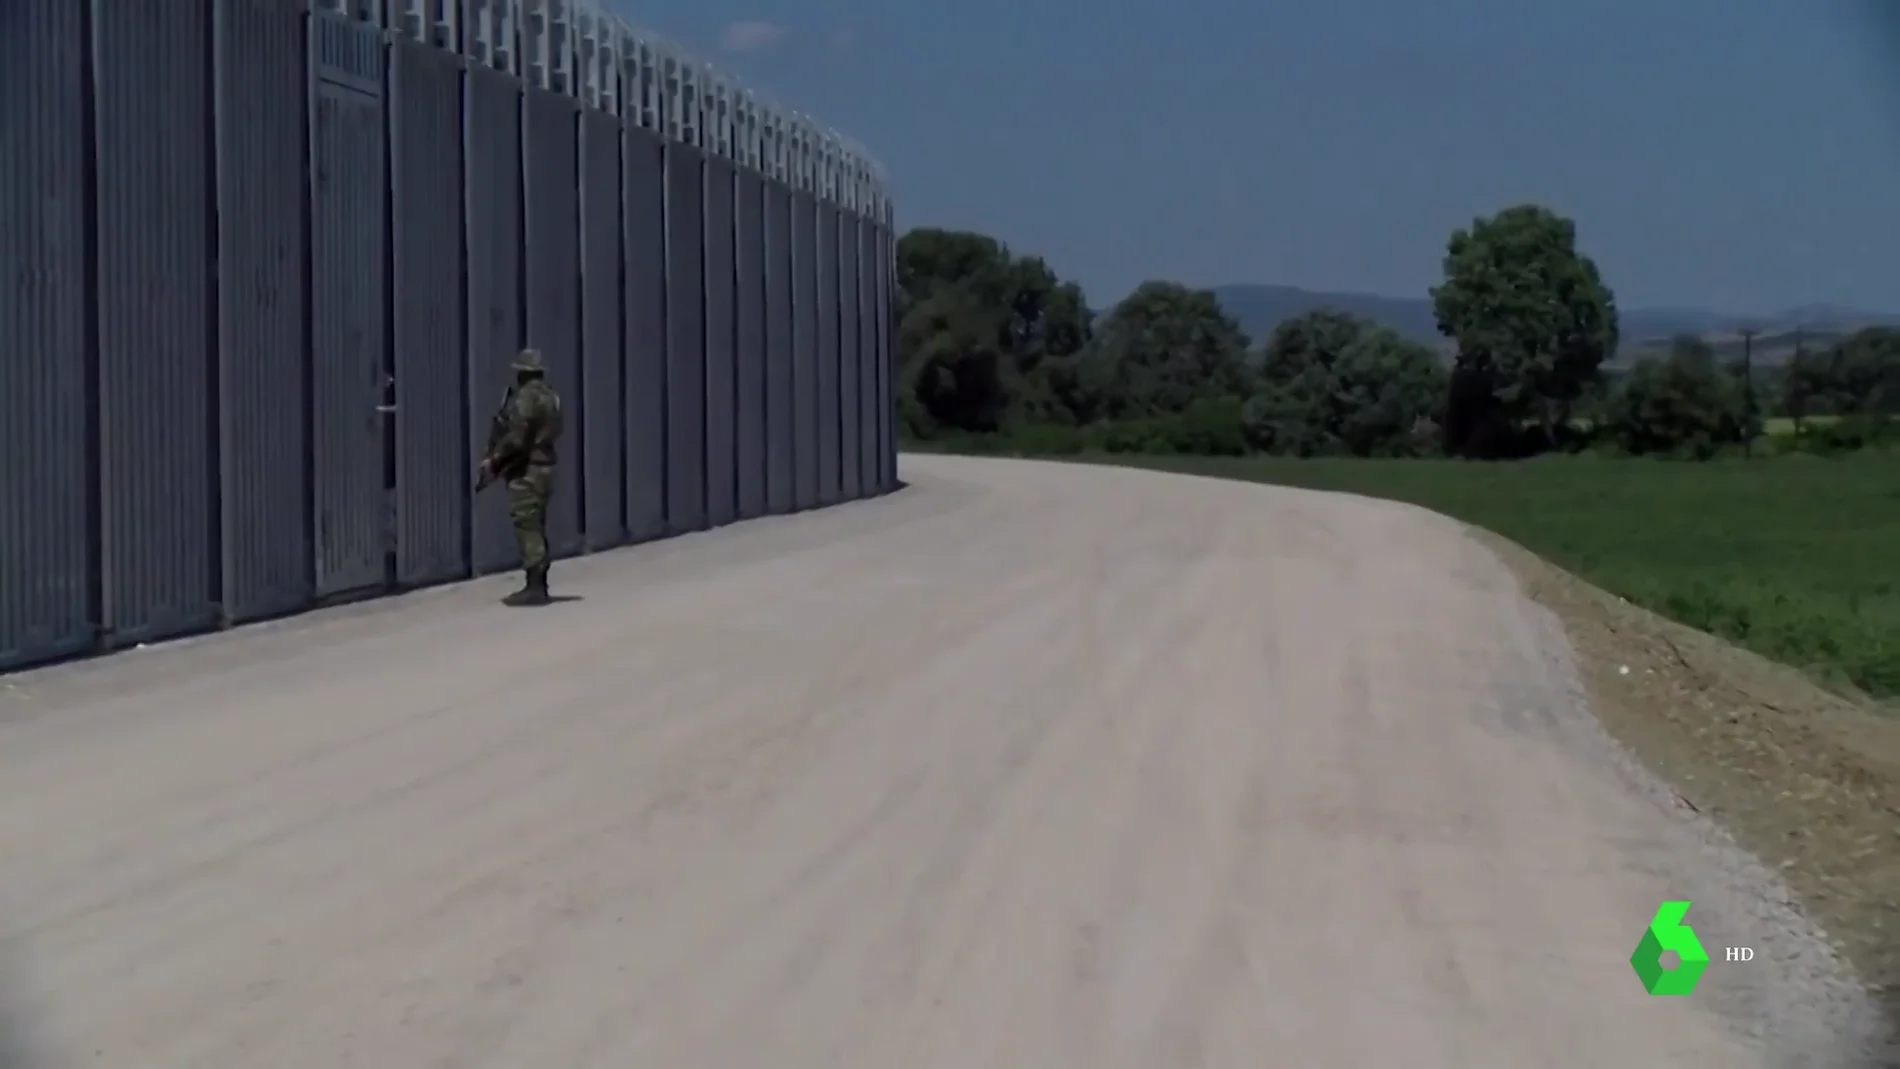 Muros de 5 metros de alto y 40 kilómetros de largo: así se refuerza Grecia para repeler llegadas masivas de refugiados